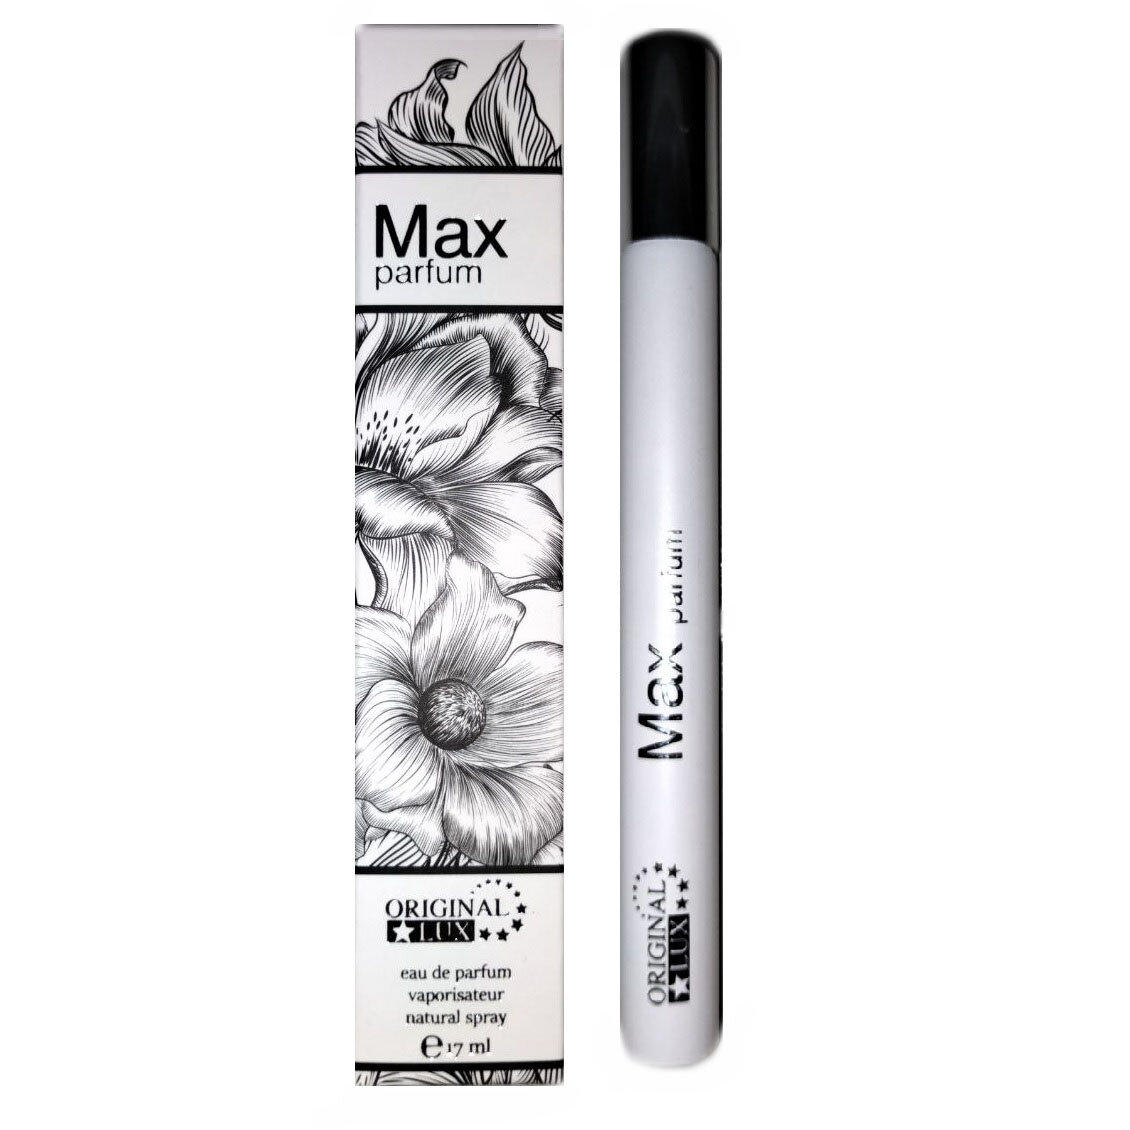 NEO Original Lux Парфюмированная вода для женщин Max parfum 17 мл